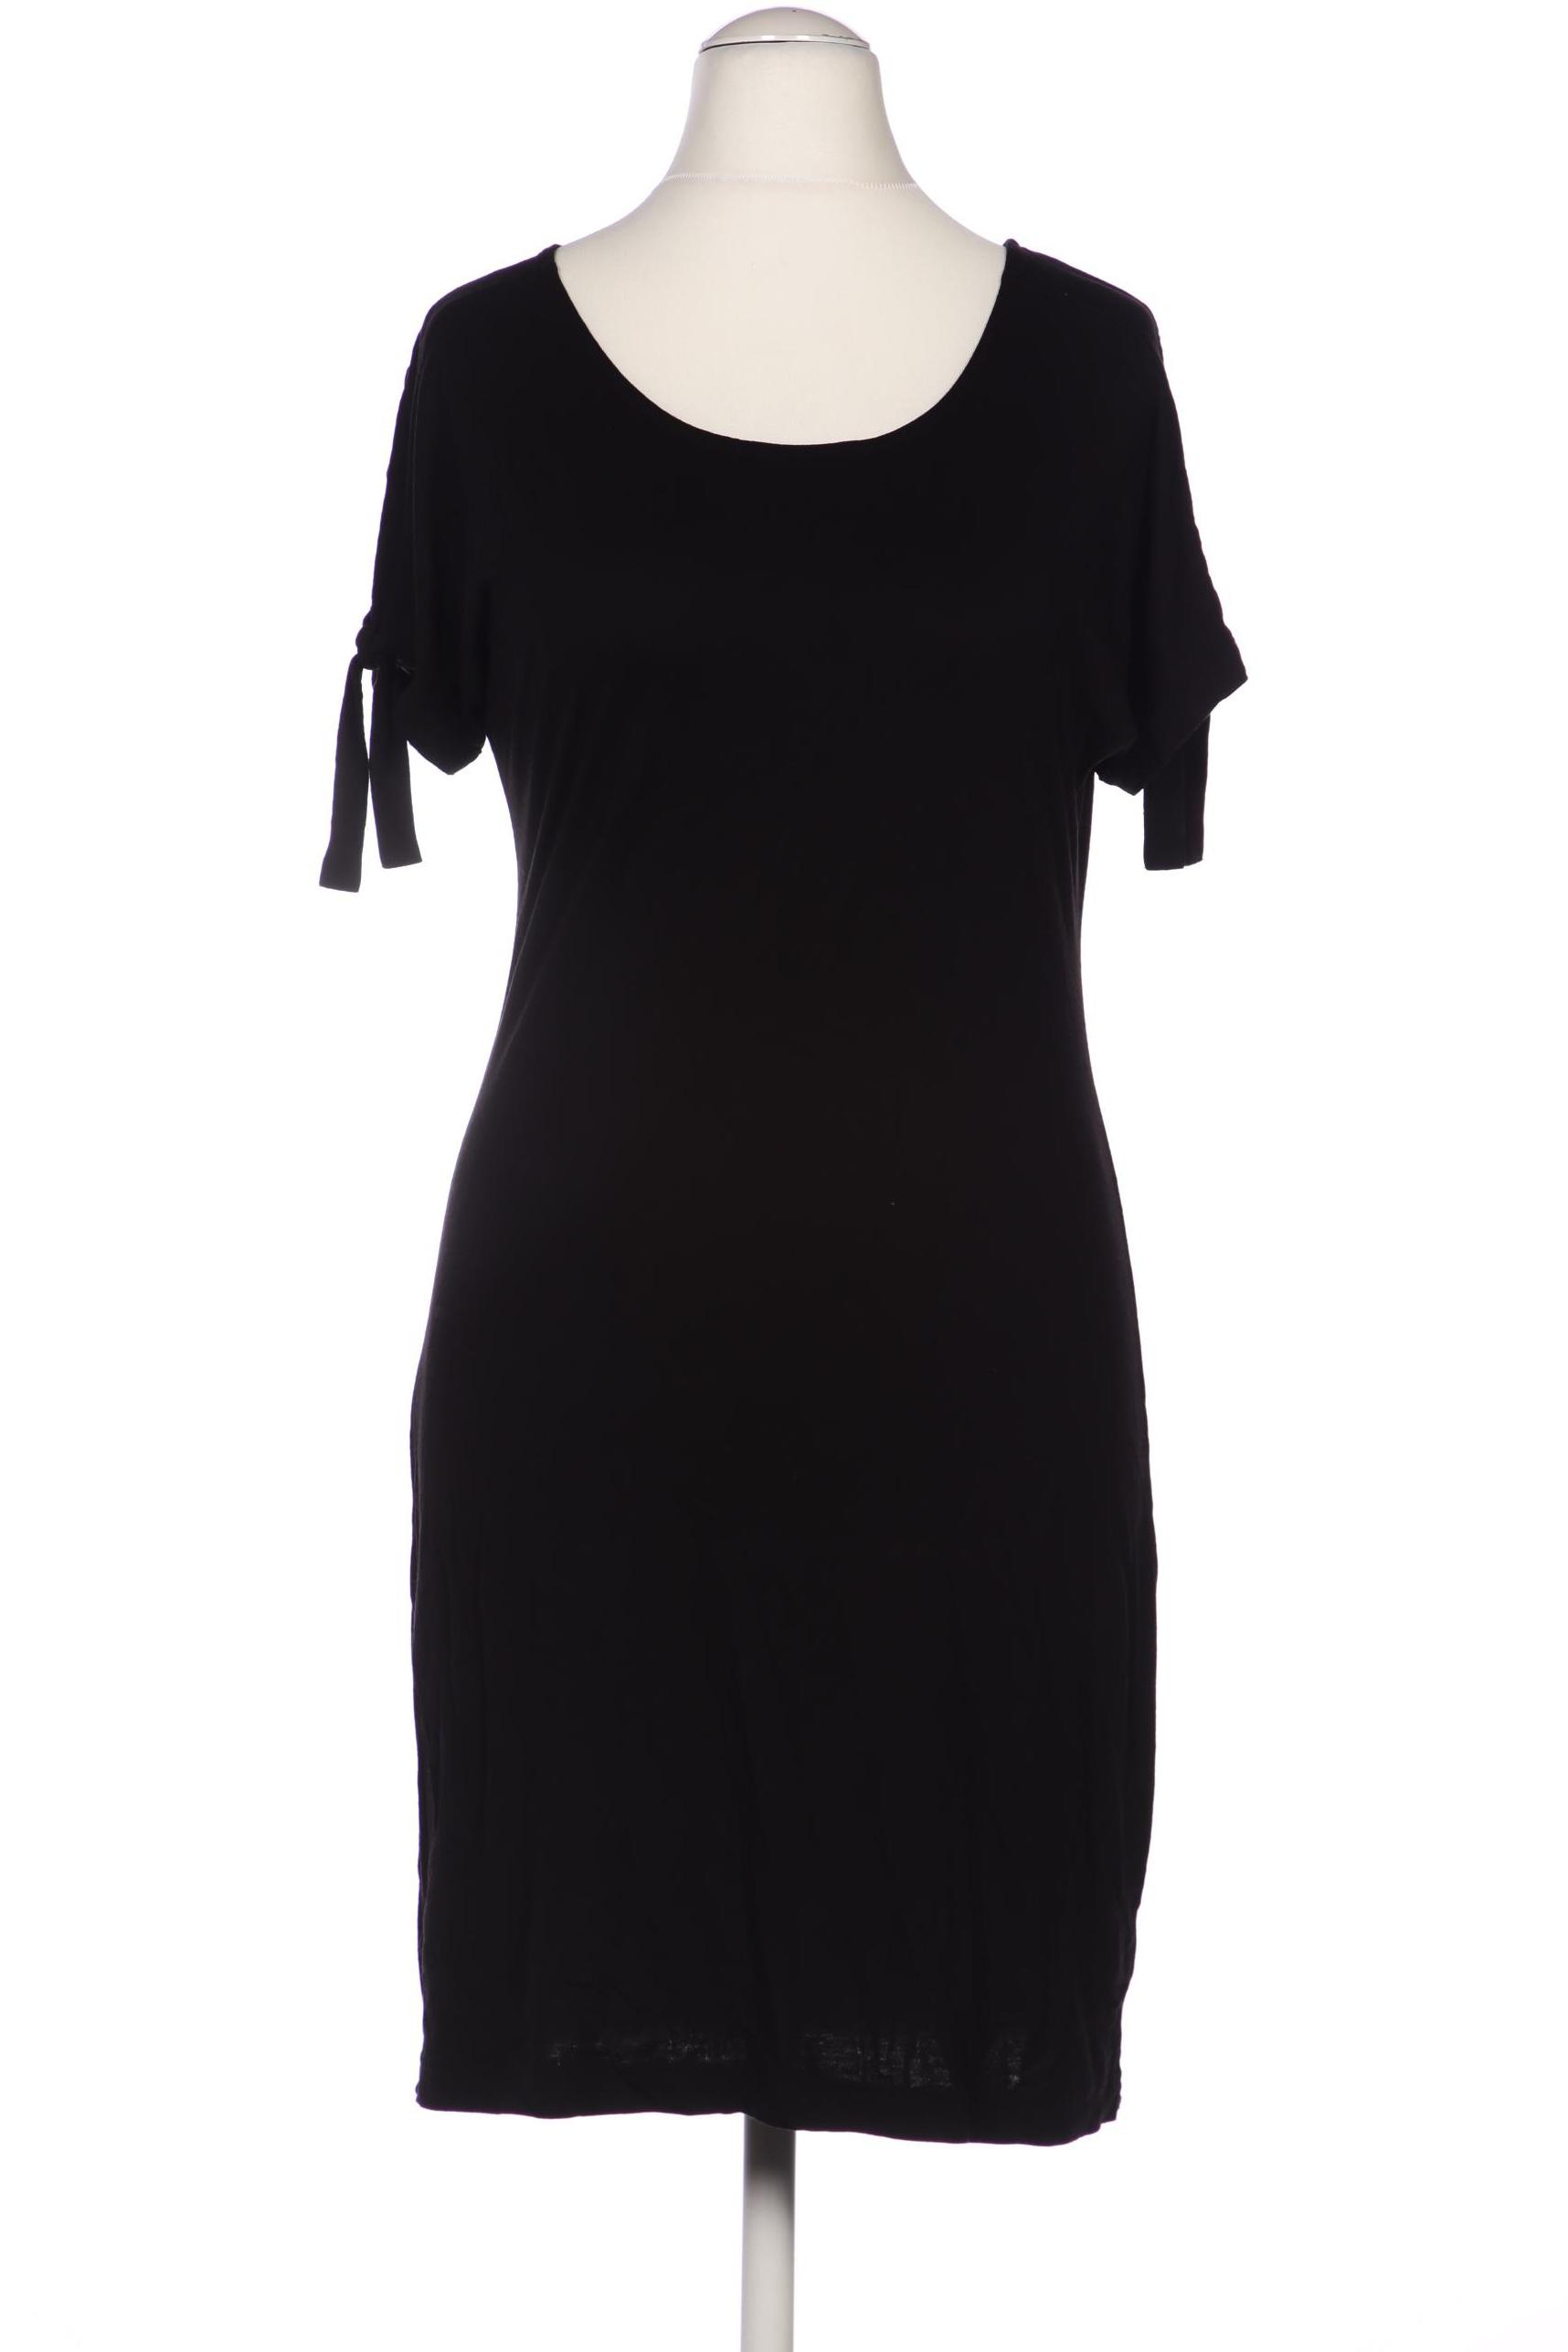 Qiero Damen Kleid, schwarz, Gr. 36 von Qiero